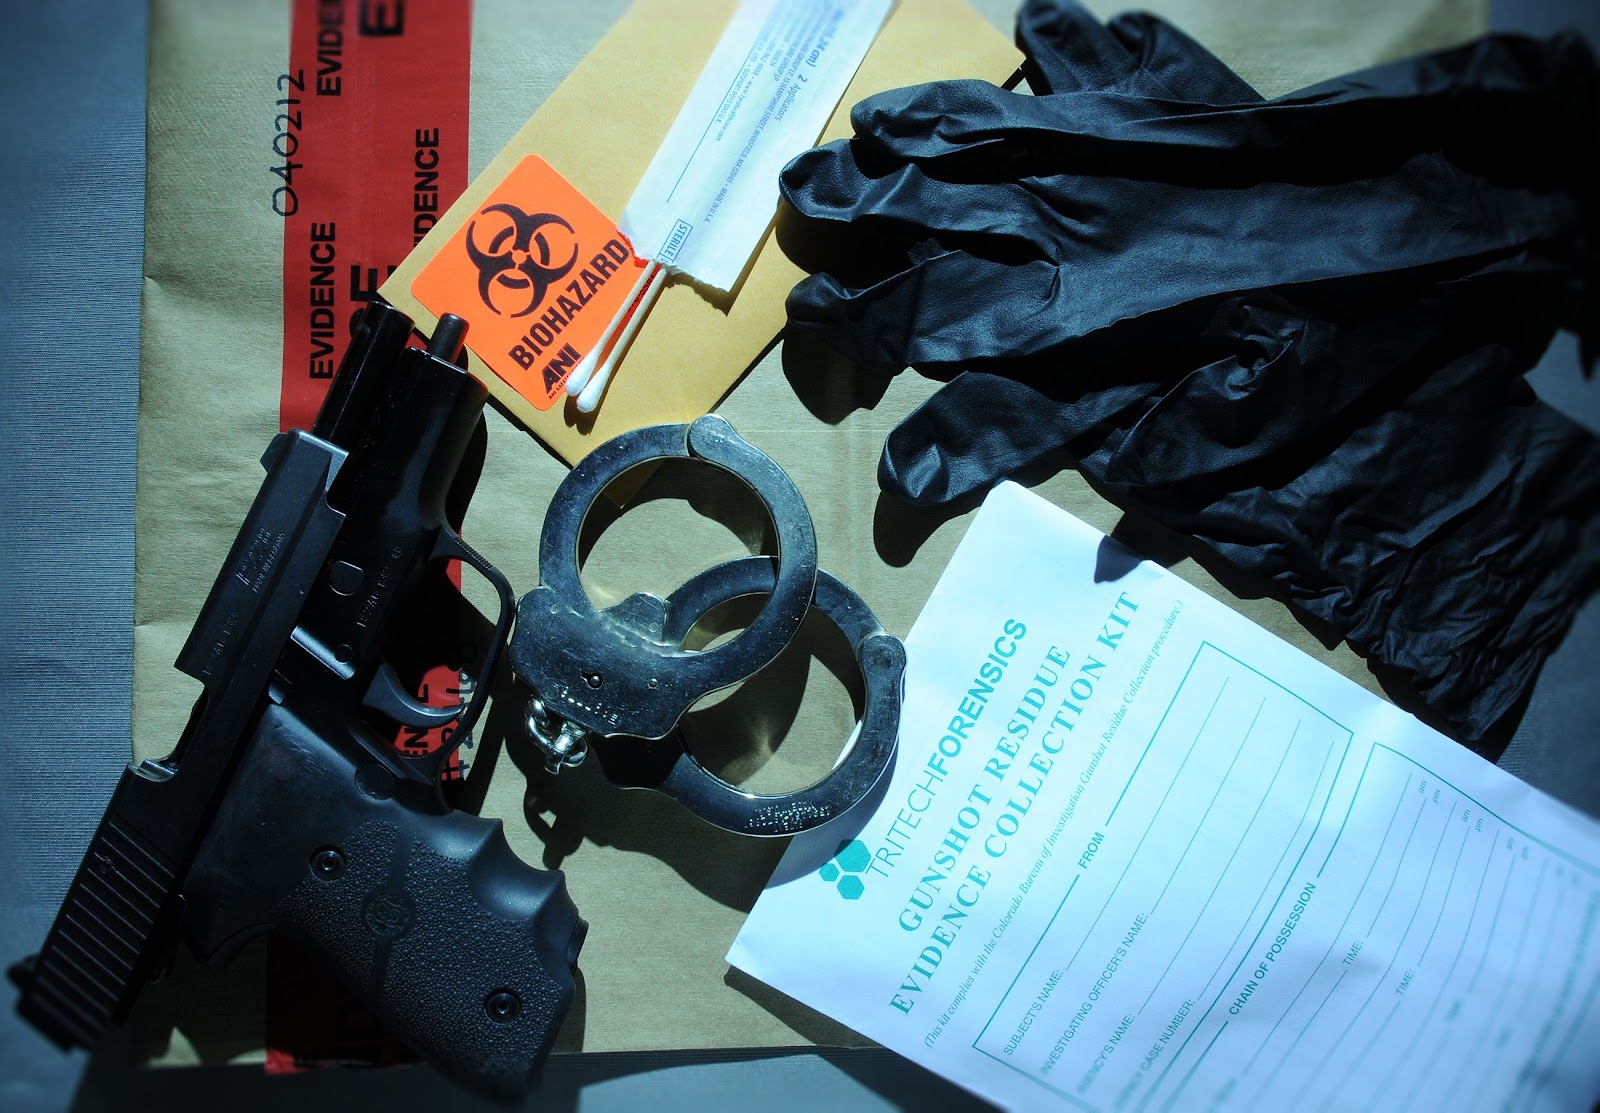 Equipment for Investigators